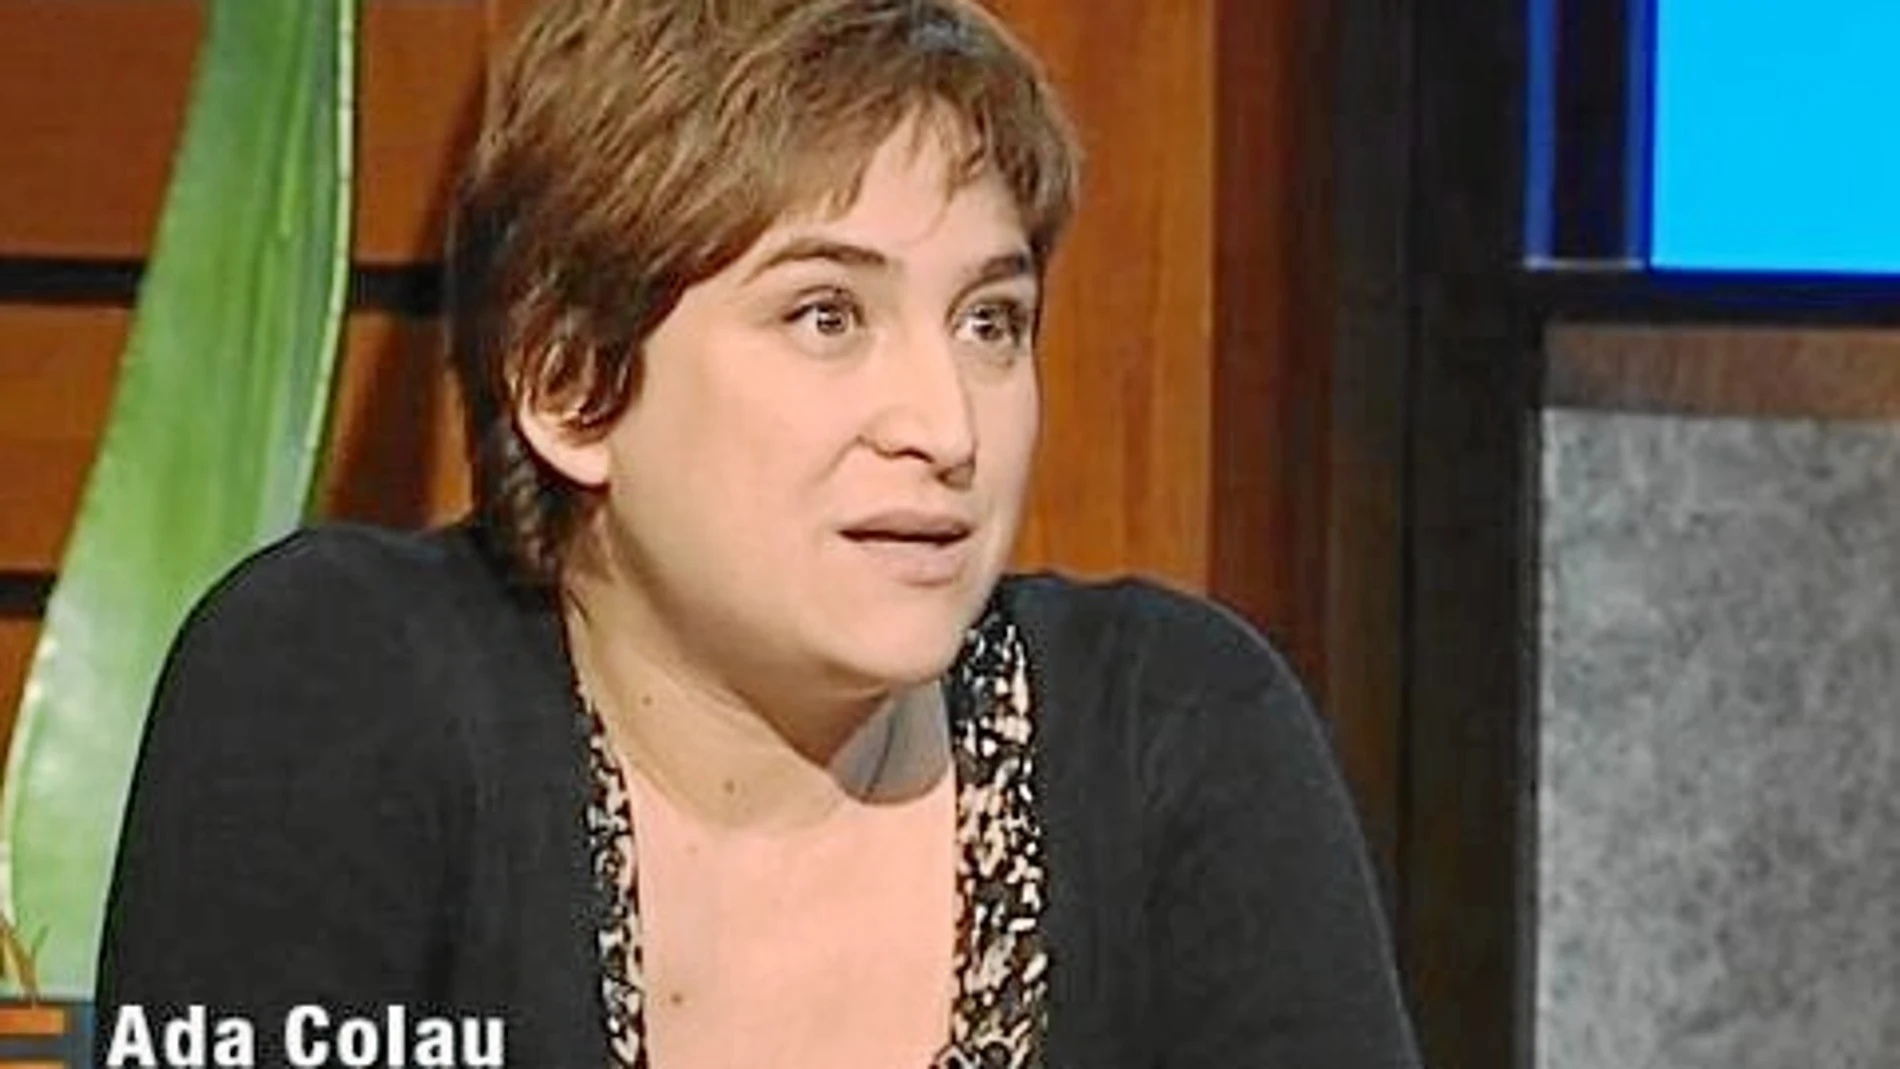 La entonces activista Ada Colau presentada como «jurista» en el programa «Singulars» de la televisión pública catalana en 2011